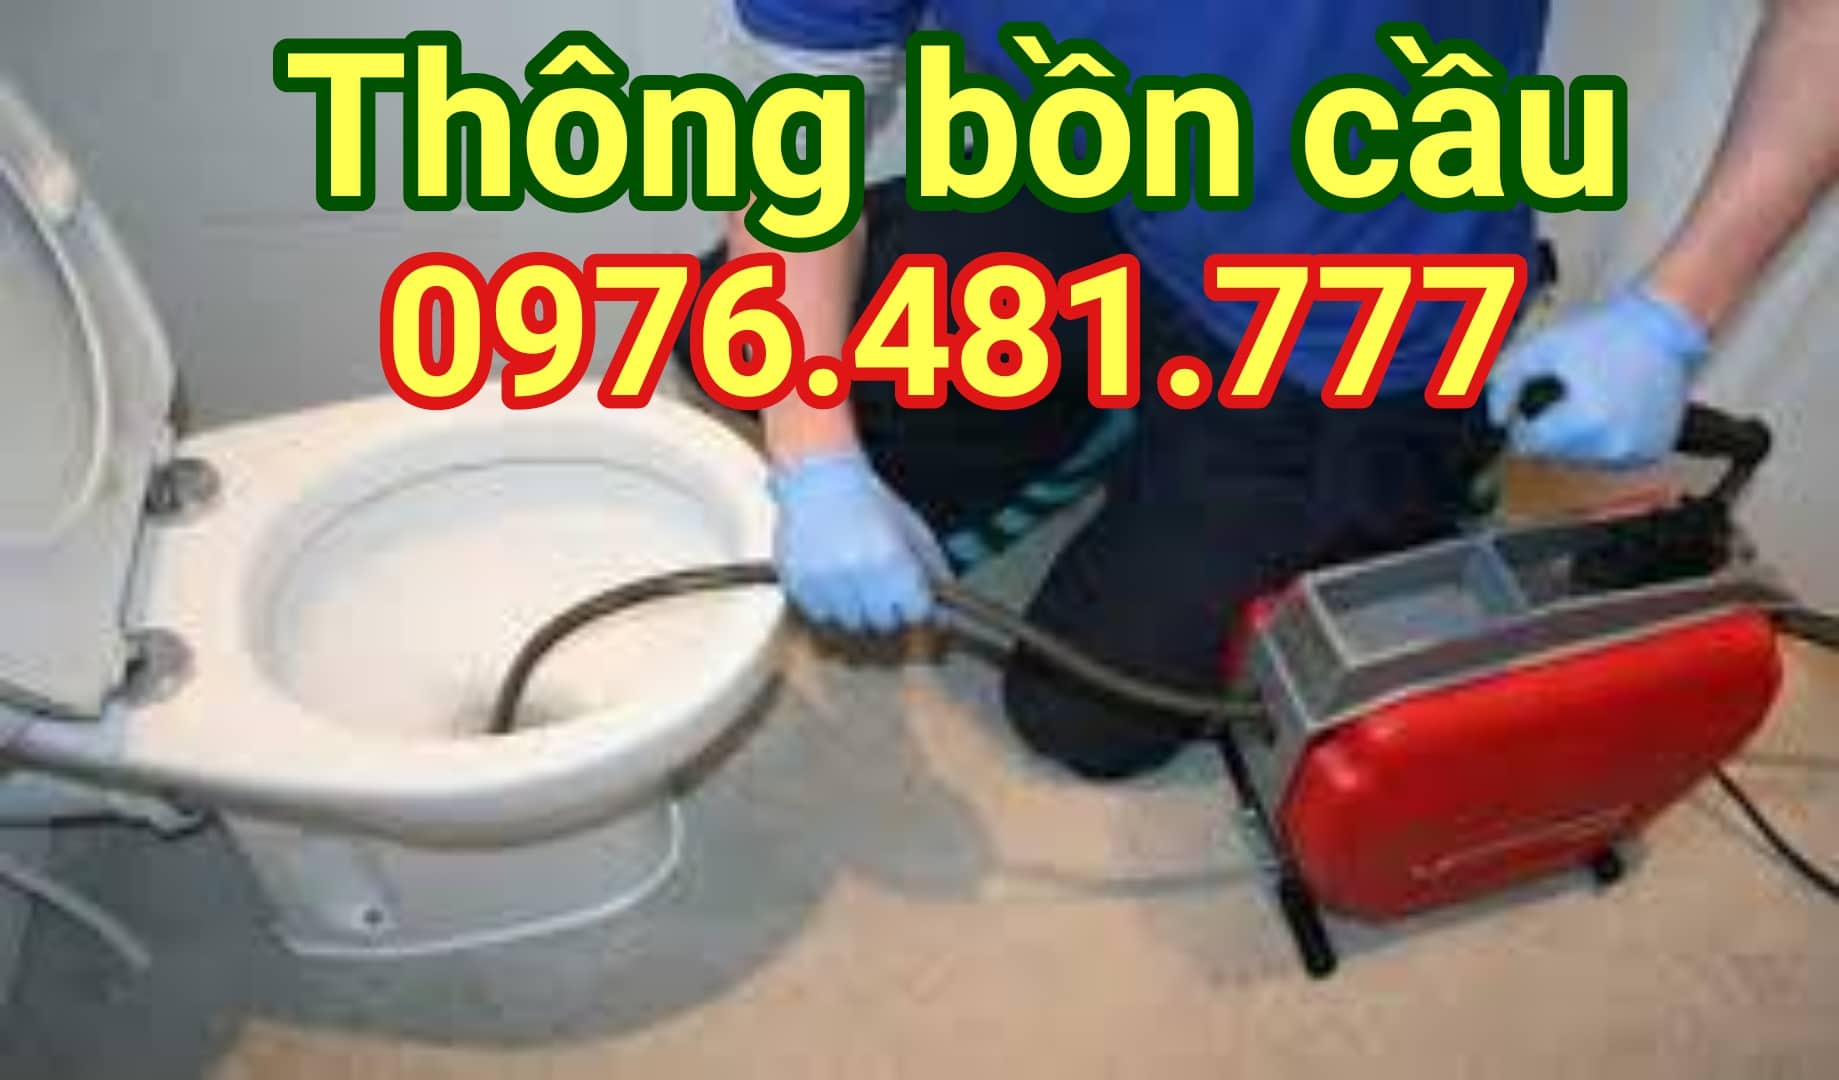 thong-bon-cau-khanh-hoa